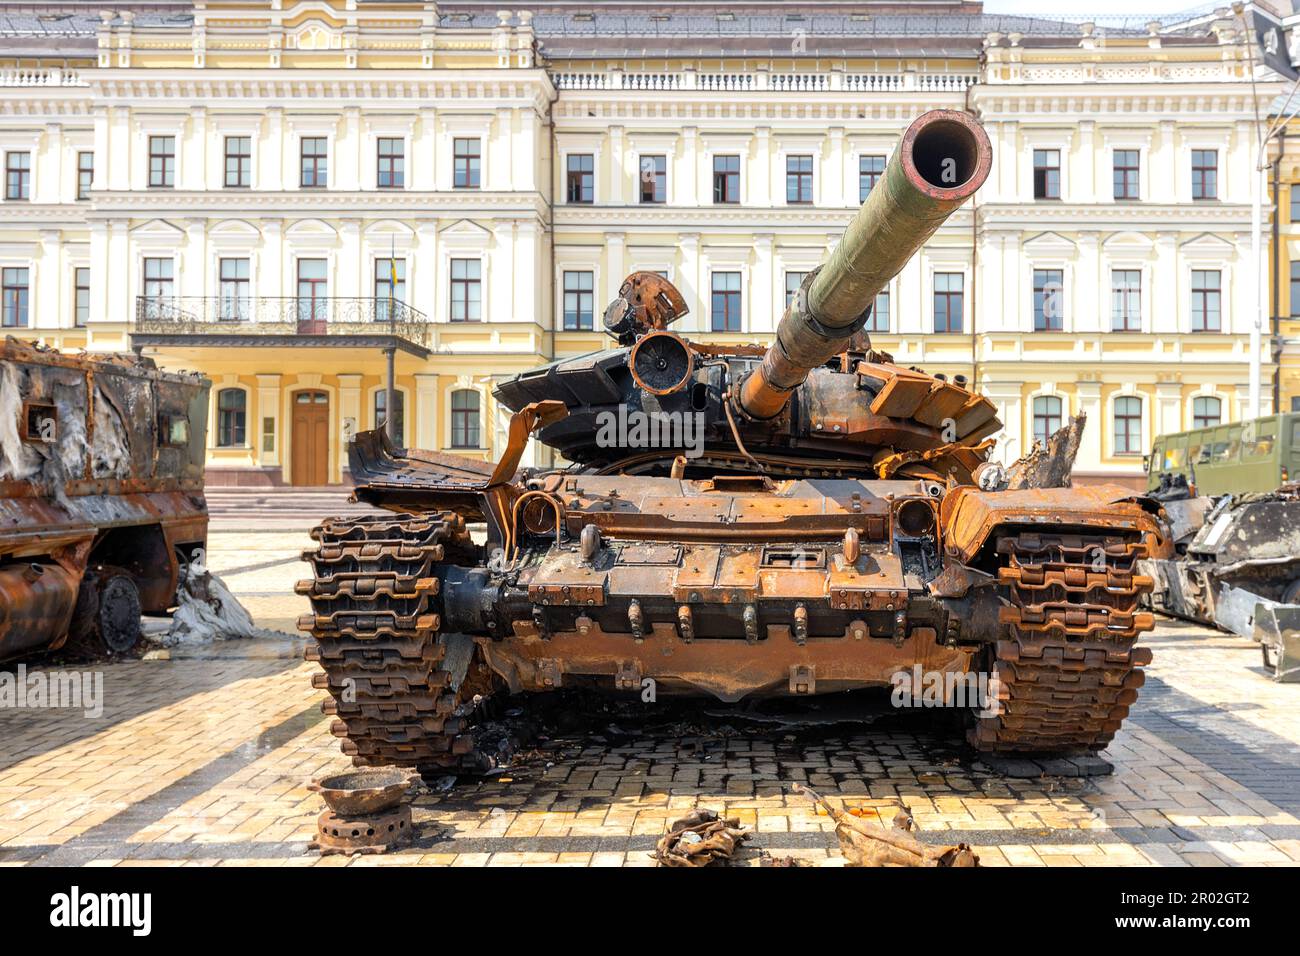 Rostiger russischer Panzer, ausgestellt mit russischer Militärausrüstung, die während der Kämpfe während der russischen Invasion in der Ukraine zerstört wurde. Stockfoto